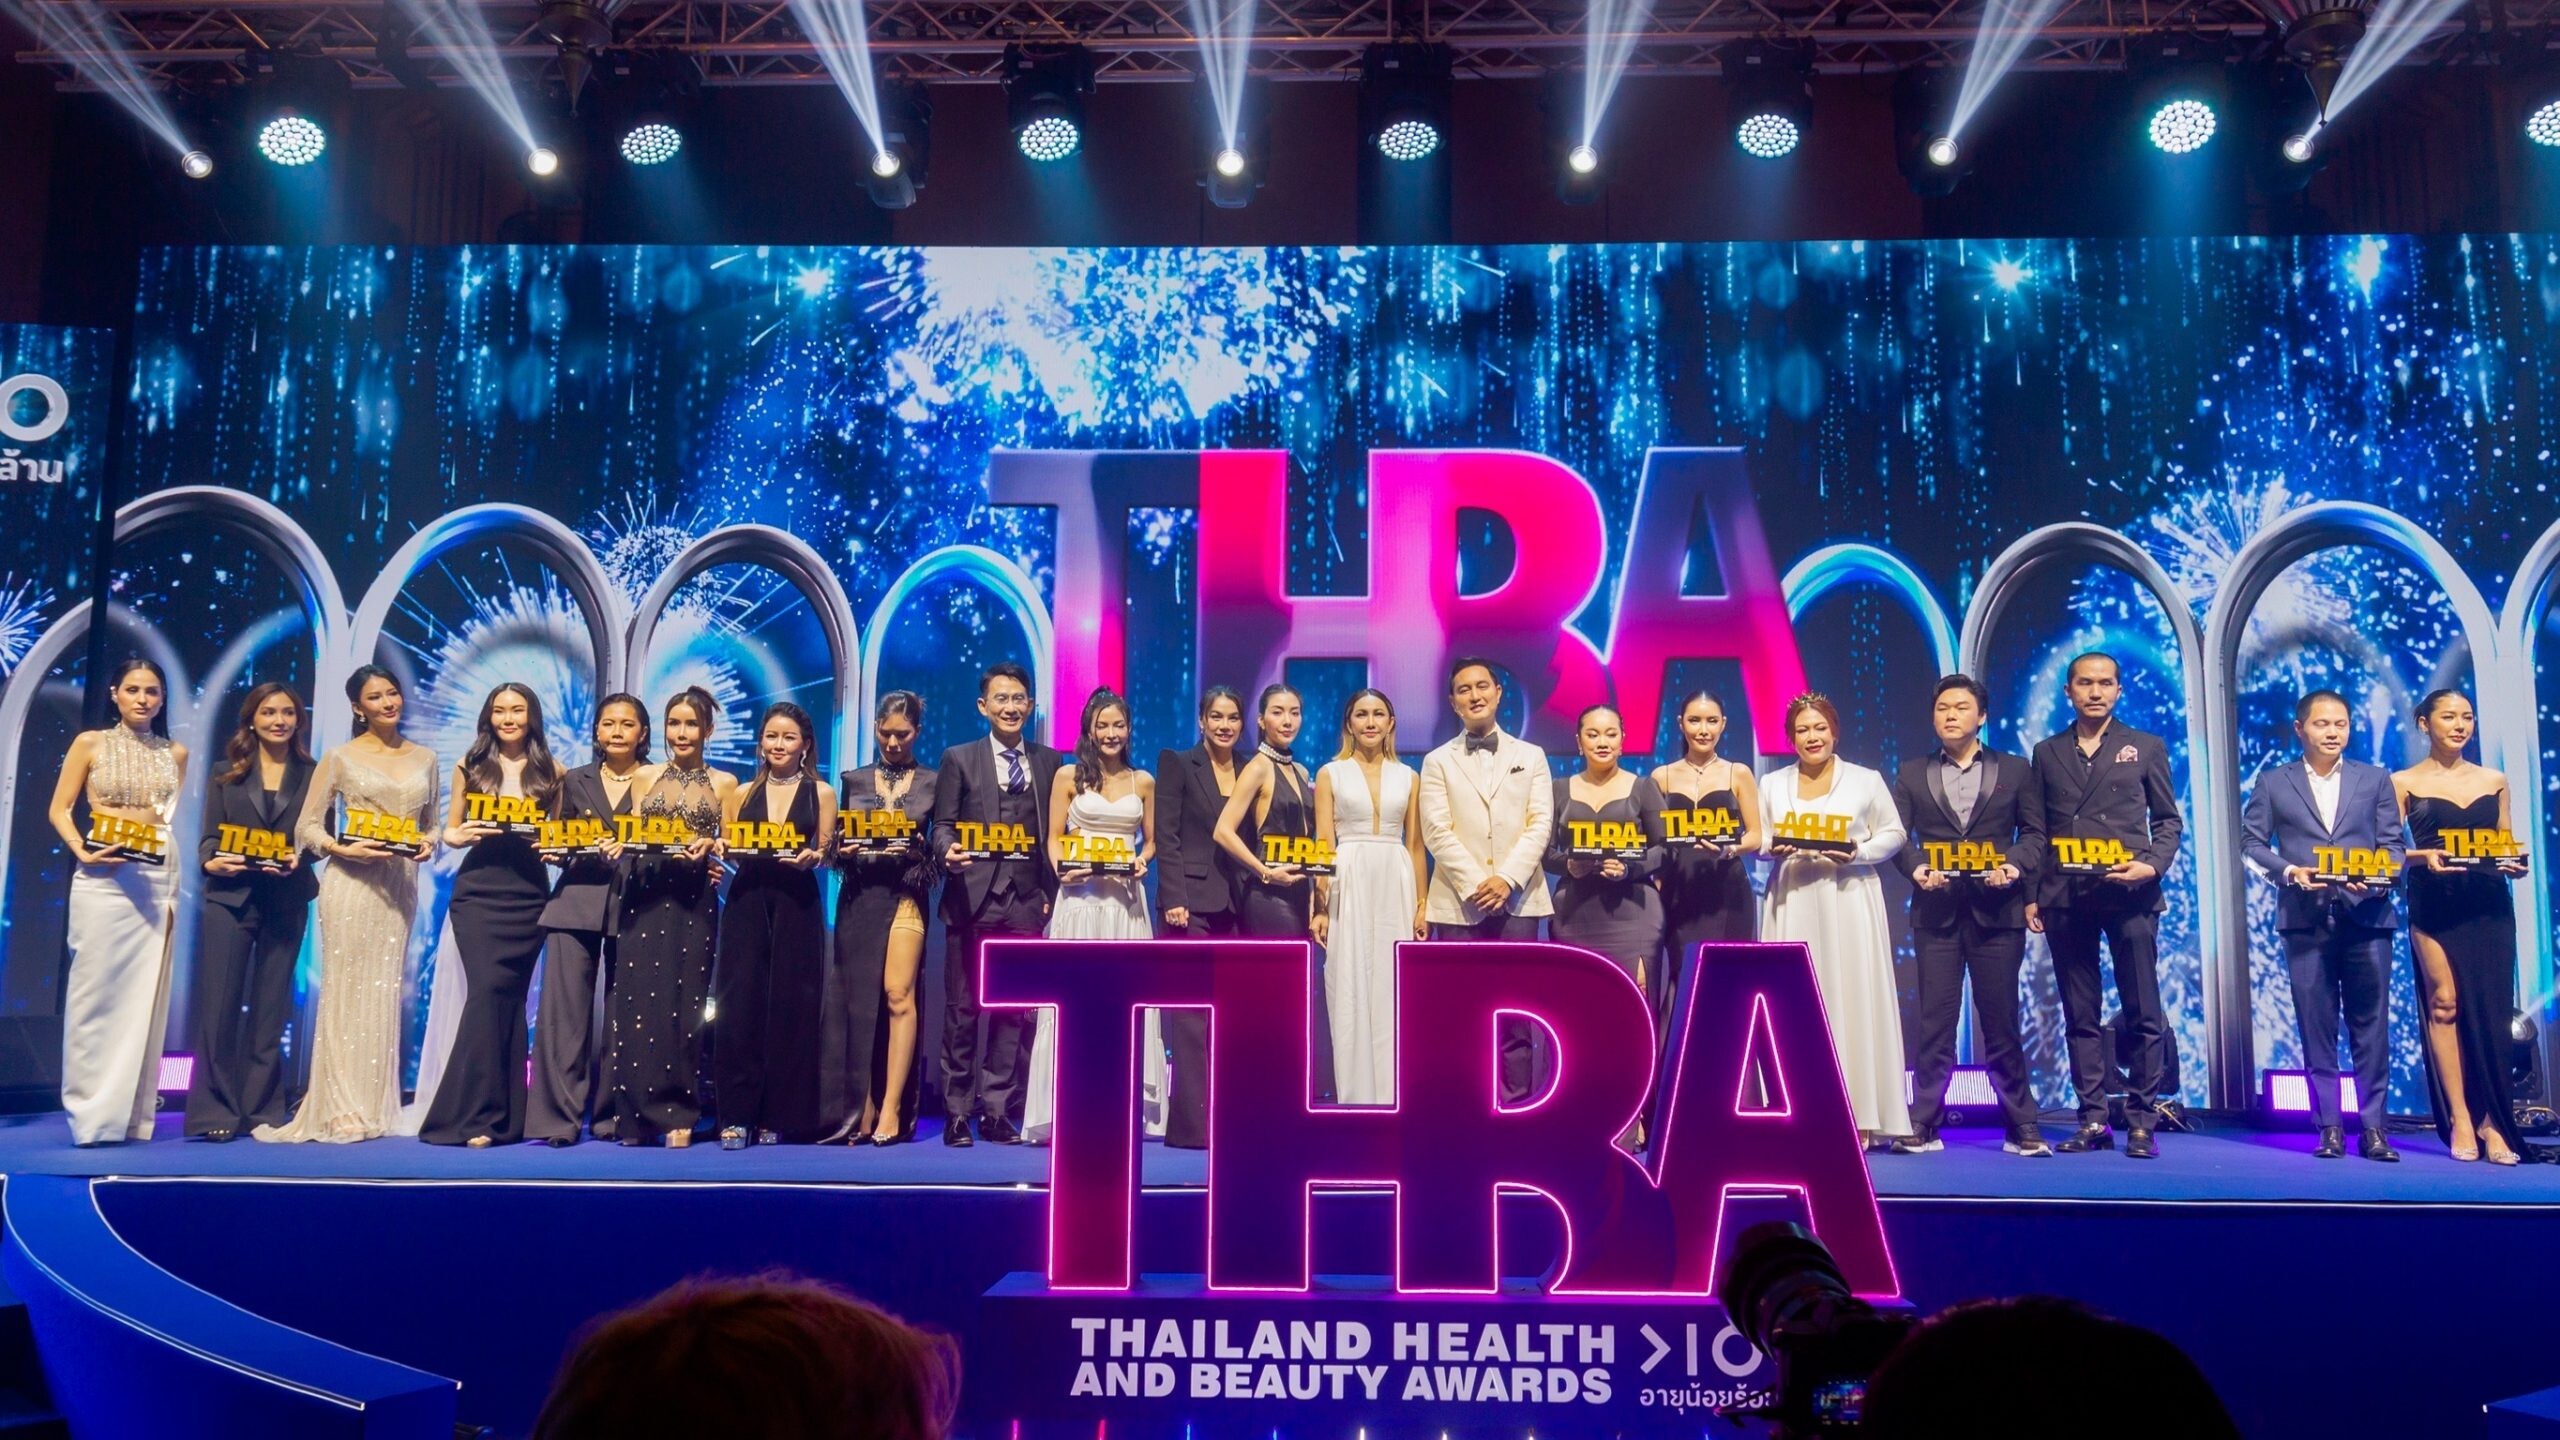 คนบันเทิง คิมเบอร์ลี่ , ขวัญ ,พุฒิ , จุ๋ย , วุ้นเส้น พาเหรดรับรางวัลสุดยิ่งใหญ่ "THAILAND HEALTH AND BEAUTY AWARDS 2022"